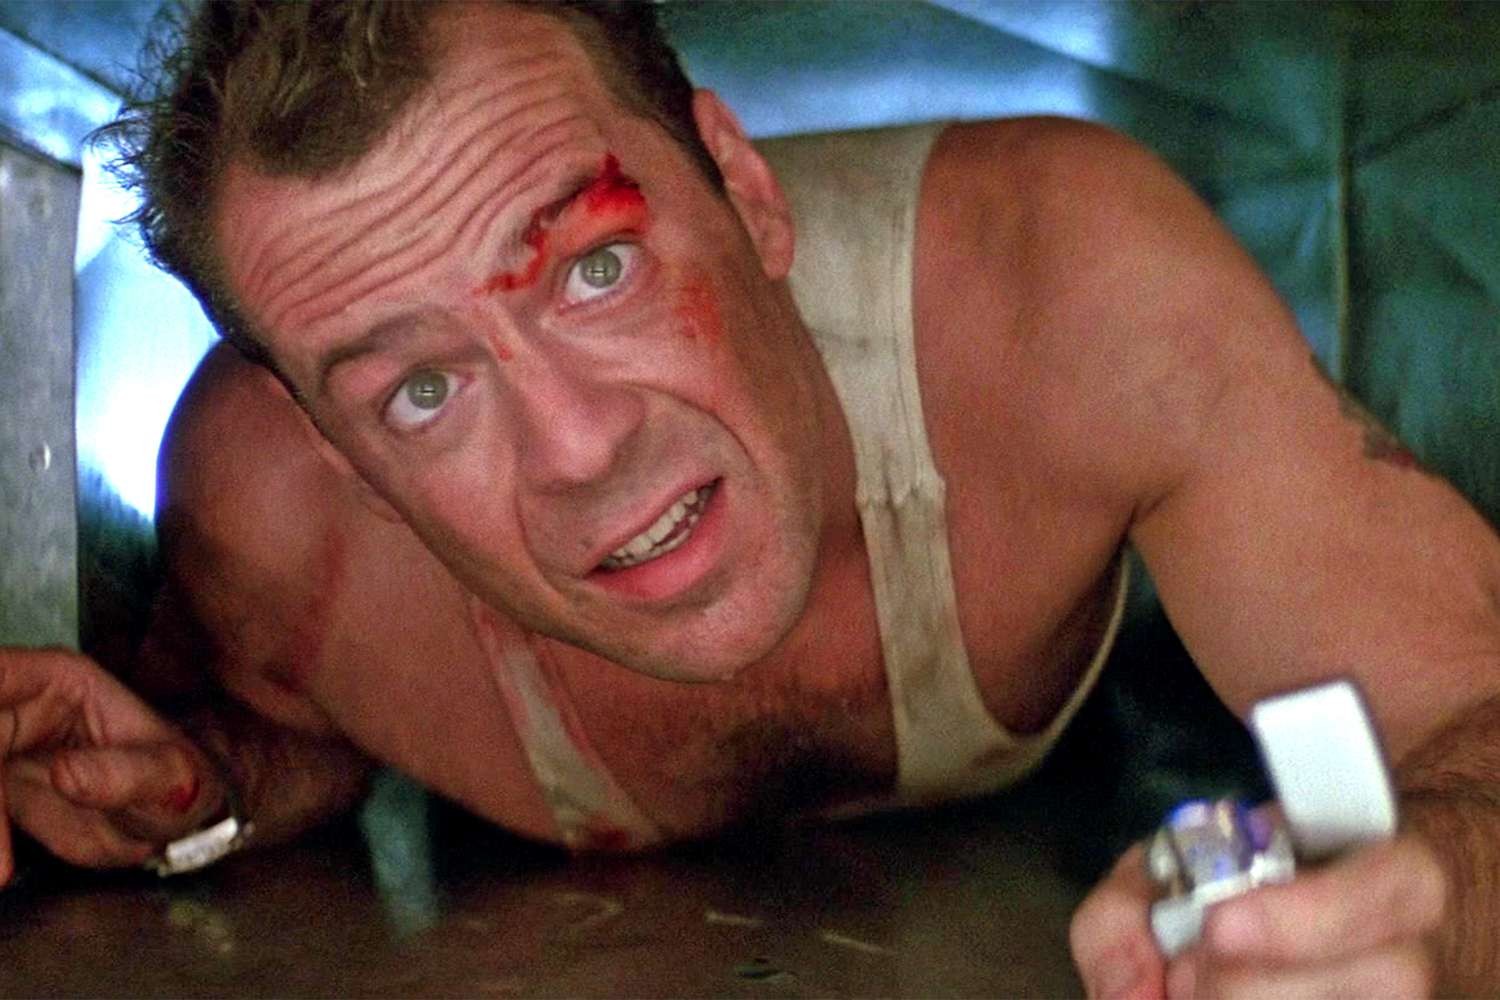 Bruce Willis as John McClane in Die Hard